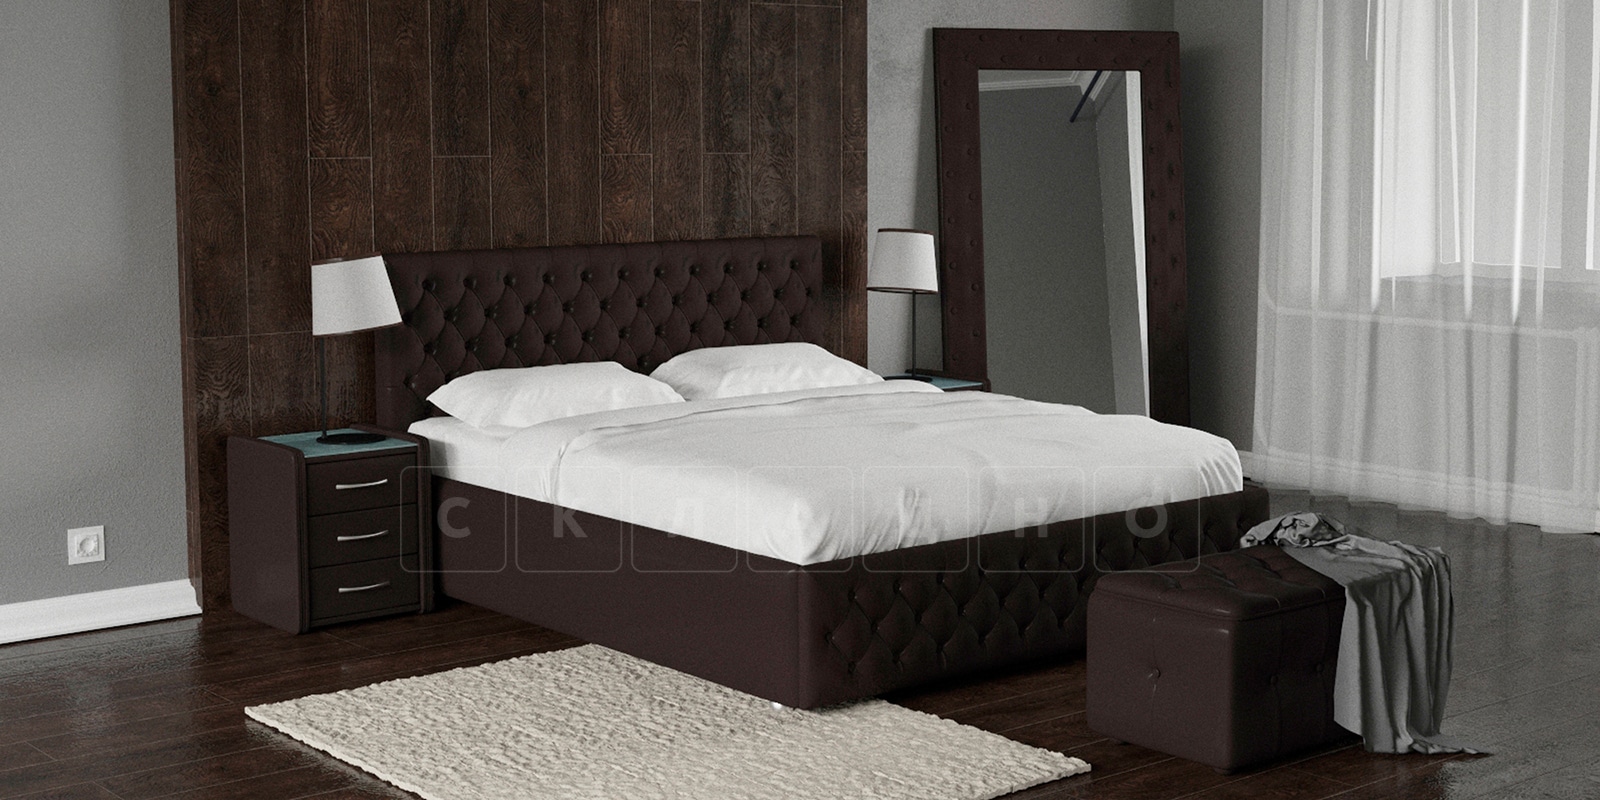 Мягкая кровать Малибу 160 см экокожа шоколадного цвета вариант 4 фото 1 | интернет-магазин Складно